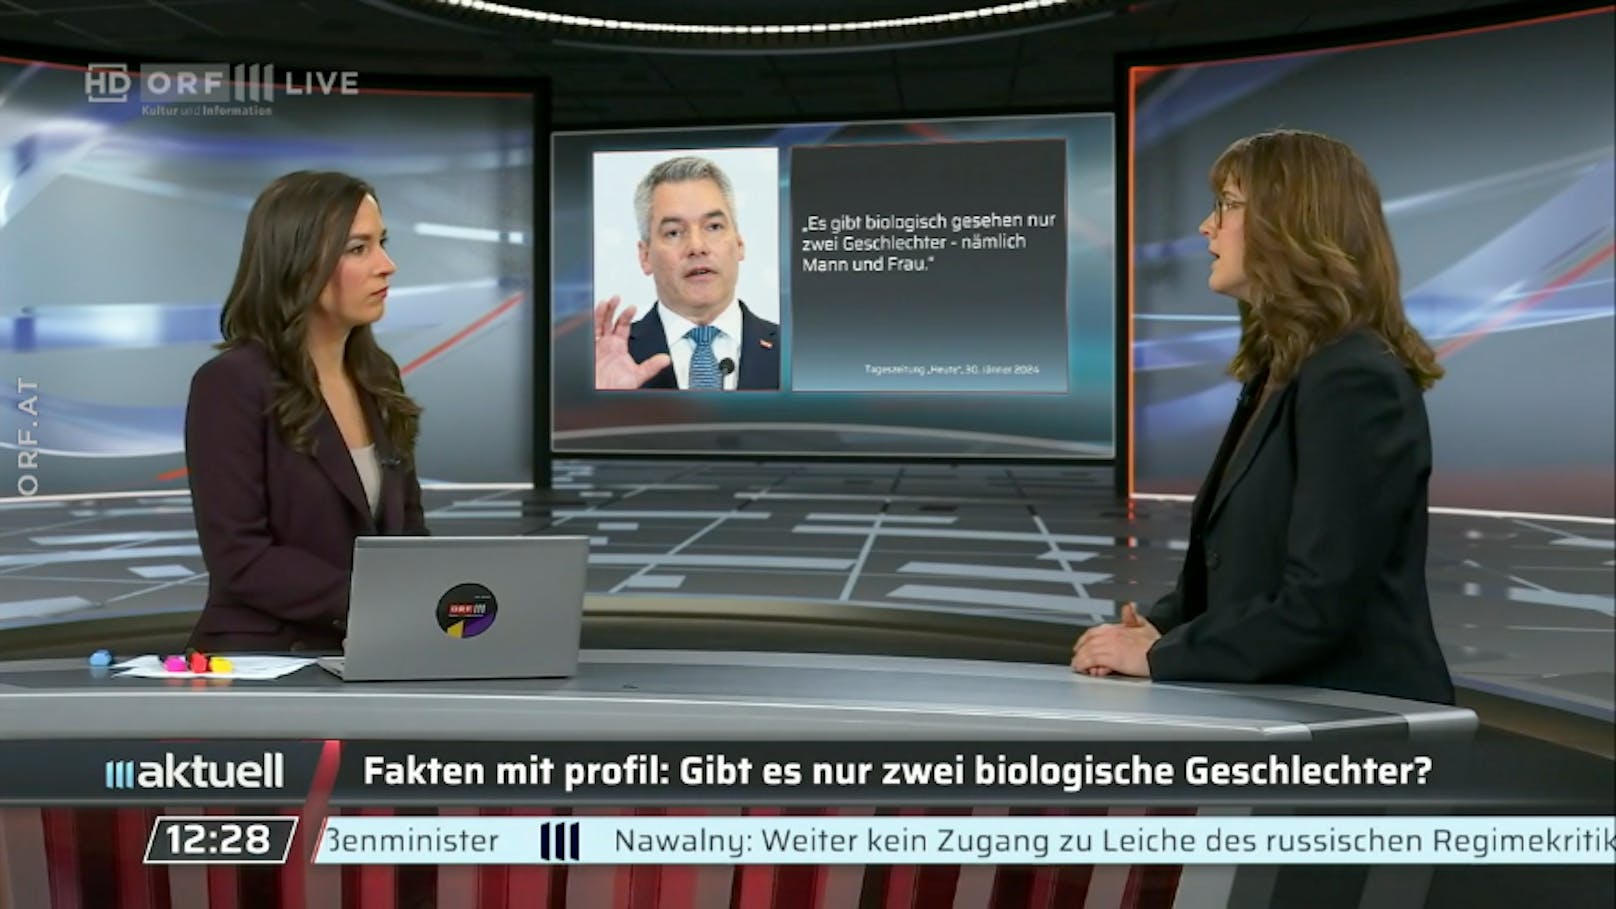 "2 Geschlechter? Falsch!": Faktencheck im ORF regt auf